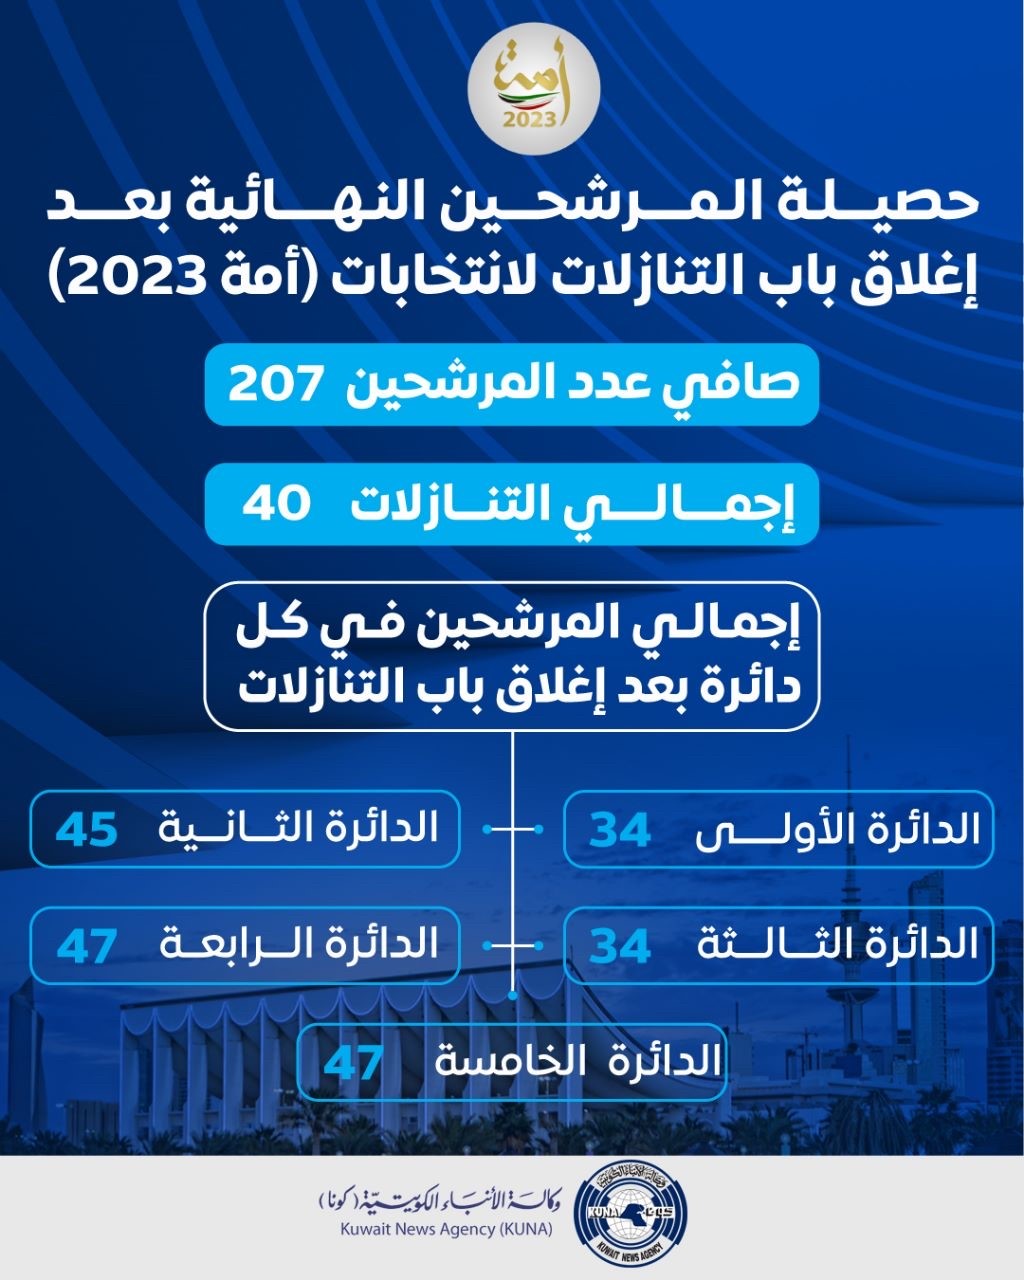 207 صافي عدد المرشحين والمرشحات بعد إغلاق باب التنازل لانتخابات (أمة 2023)